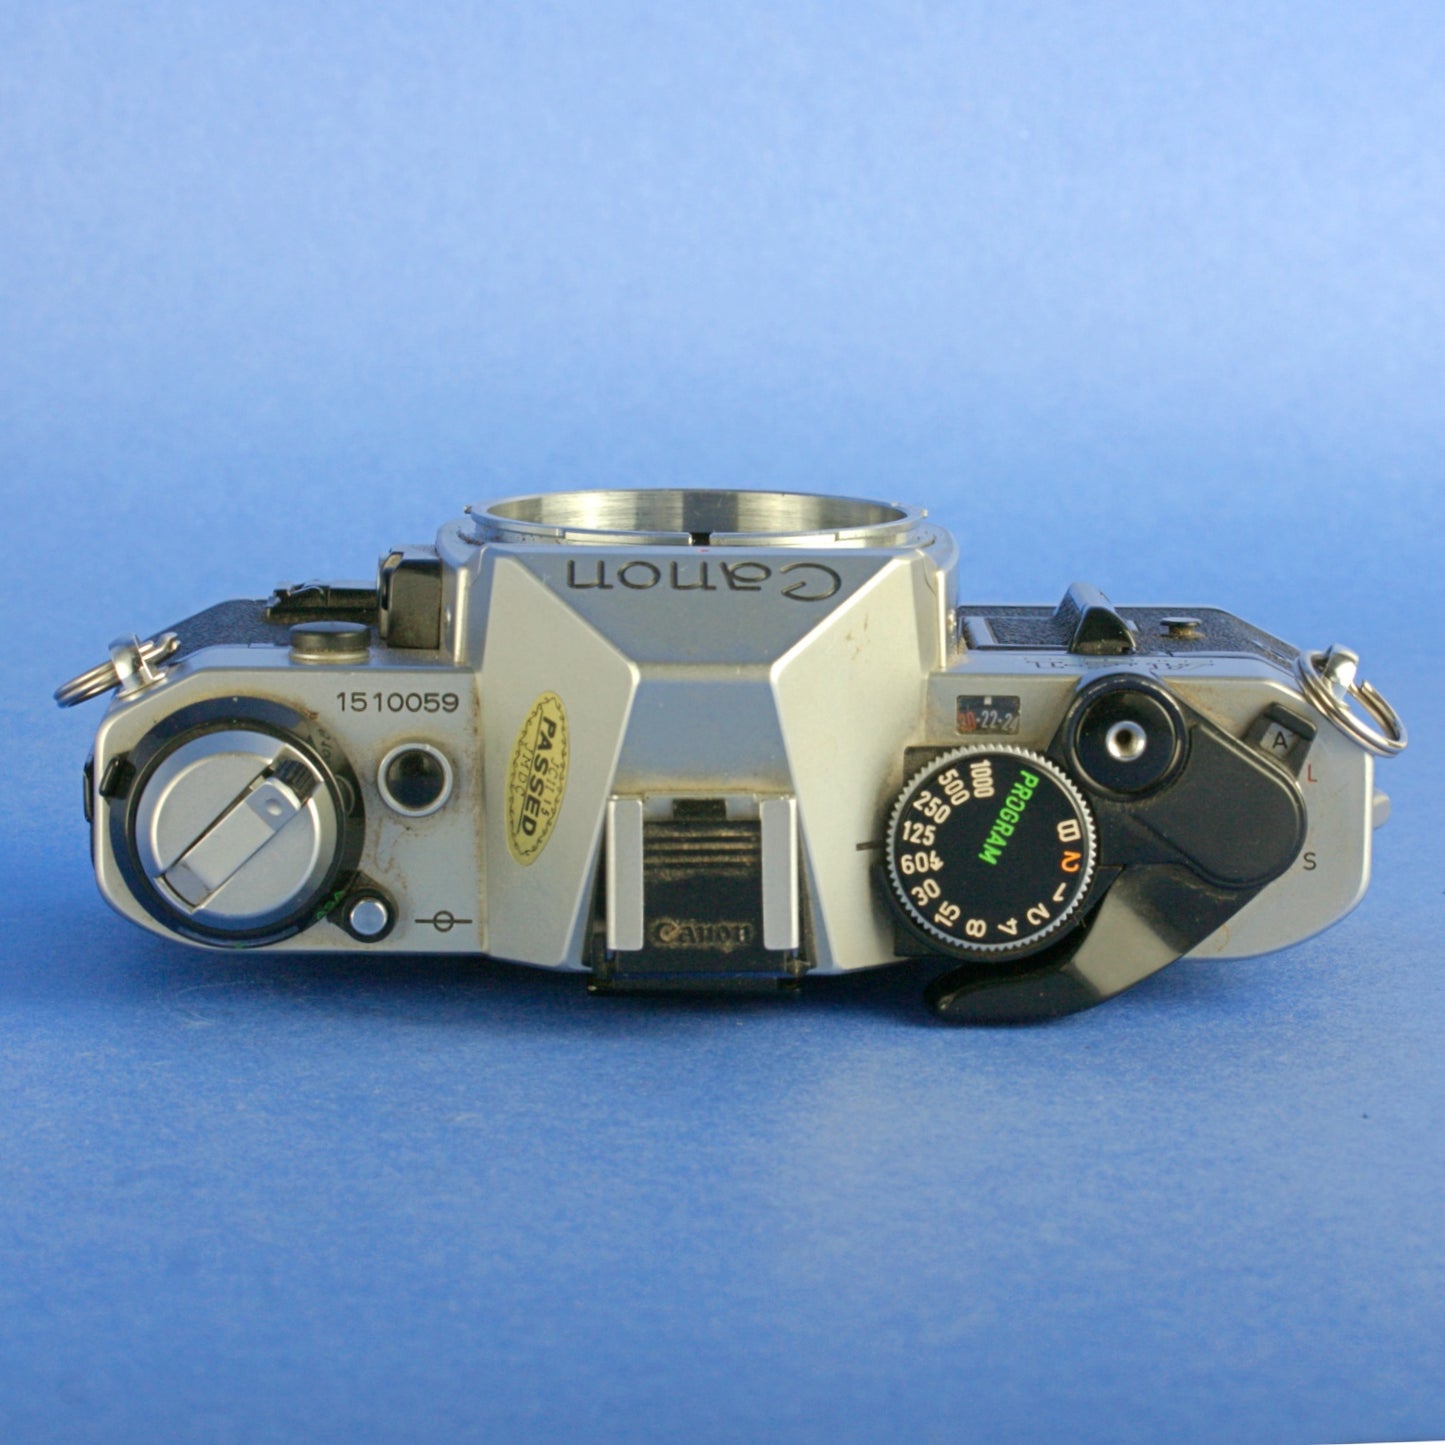 Canon AE-1 Program Film Camera Body